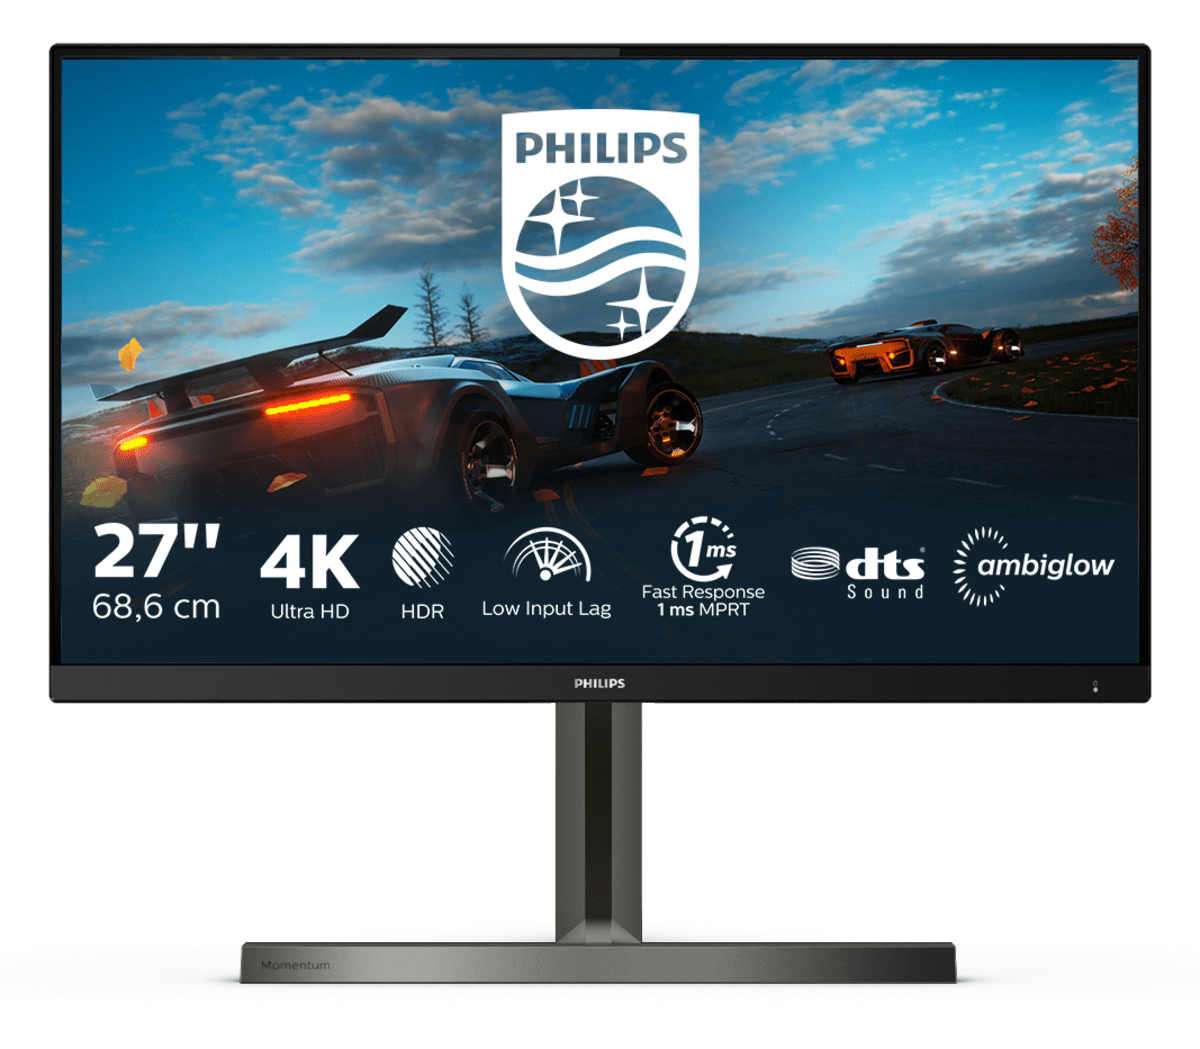 27" Игровой монитор Philips 278M1R AMBIGLOW в официальном интернет магазине AGONBYAOC.ru (AOC Россия)